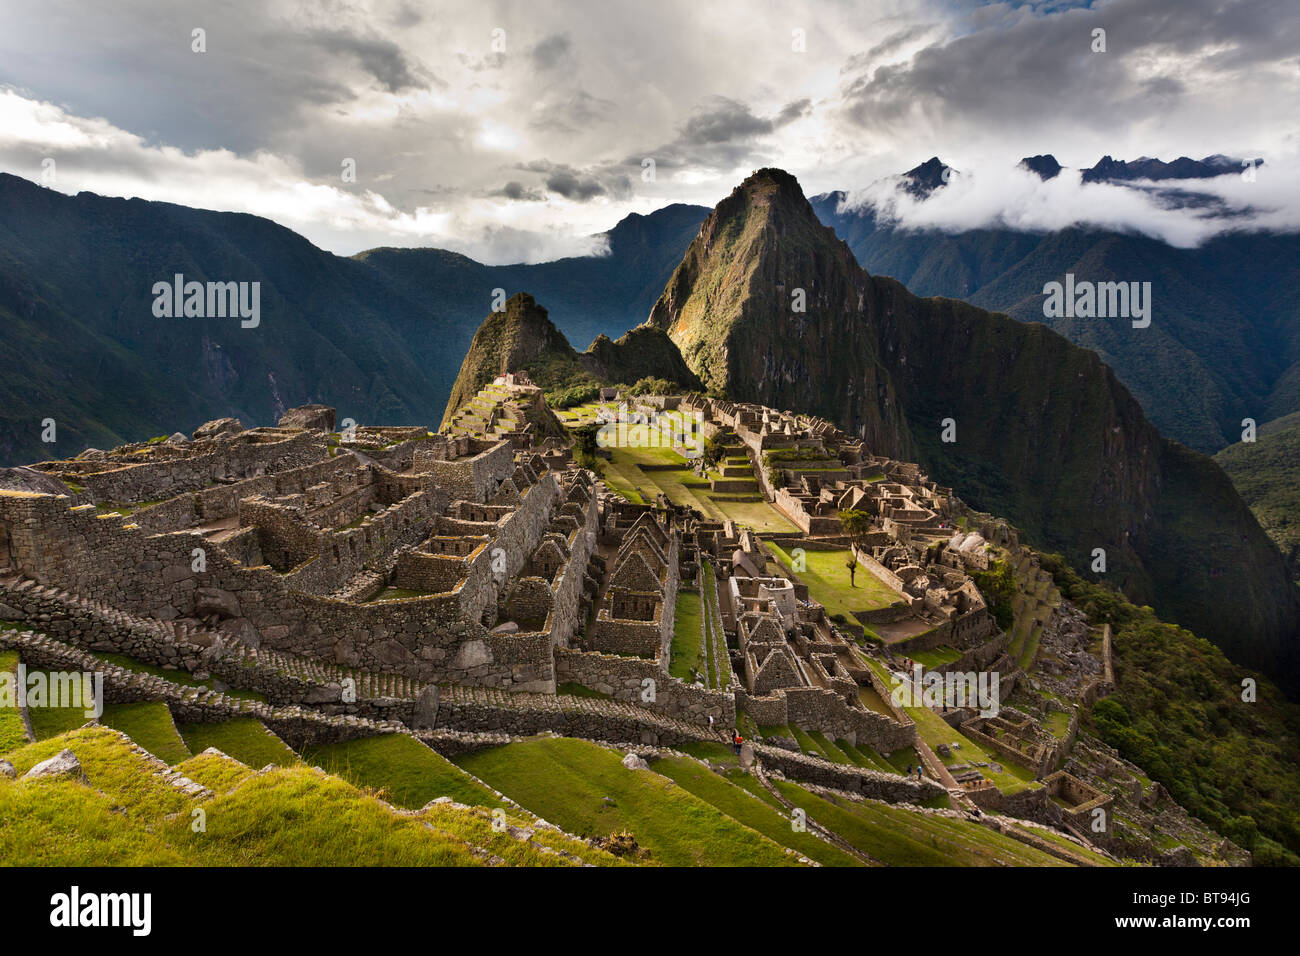 Machu Picchu, la antigua "ciudad perdida de los Incas", CA 1400, 2400 metros. Pico de Huaynapicchu (montaña joven) en la distancia Foto de stock